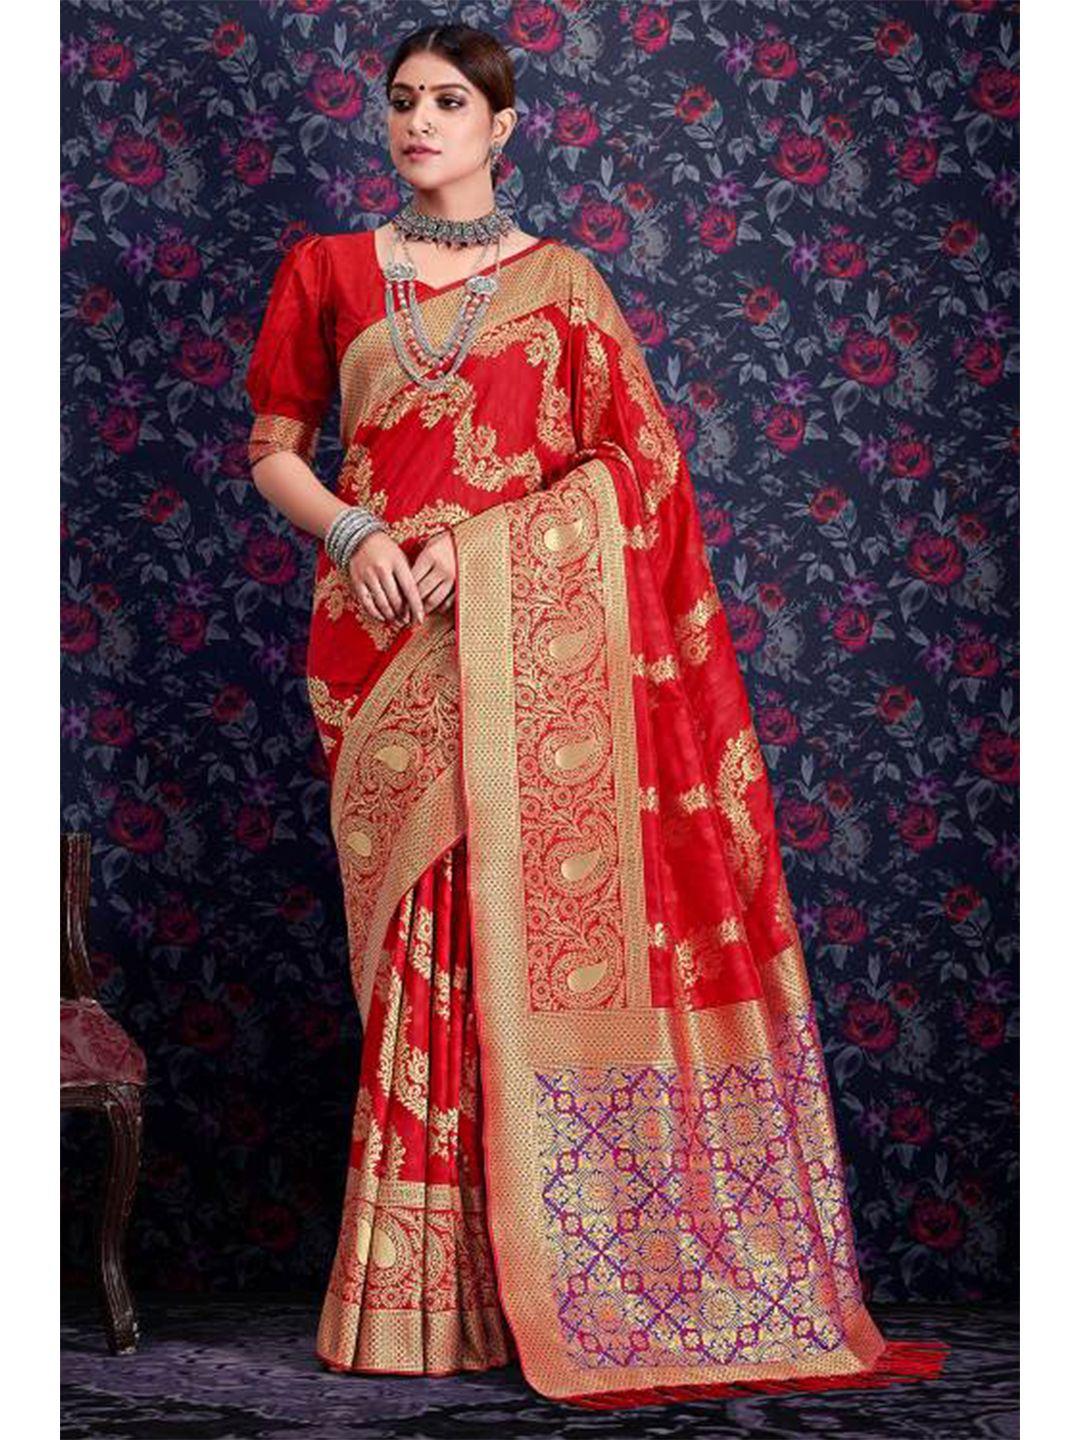 karagiri red & gold-toned paisley silk saree